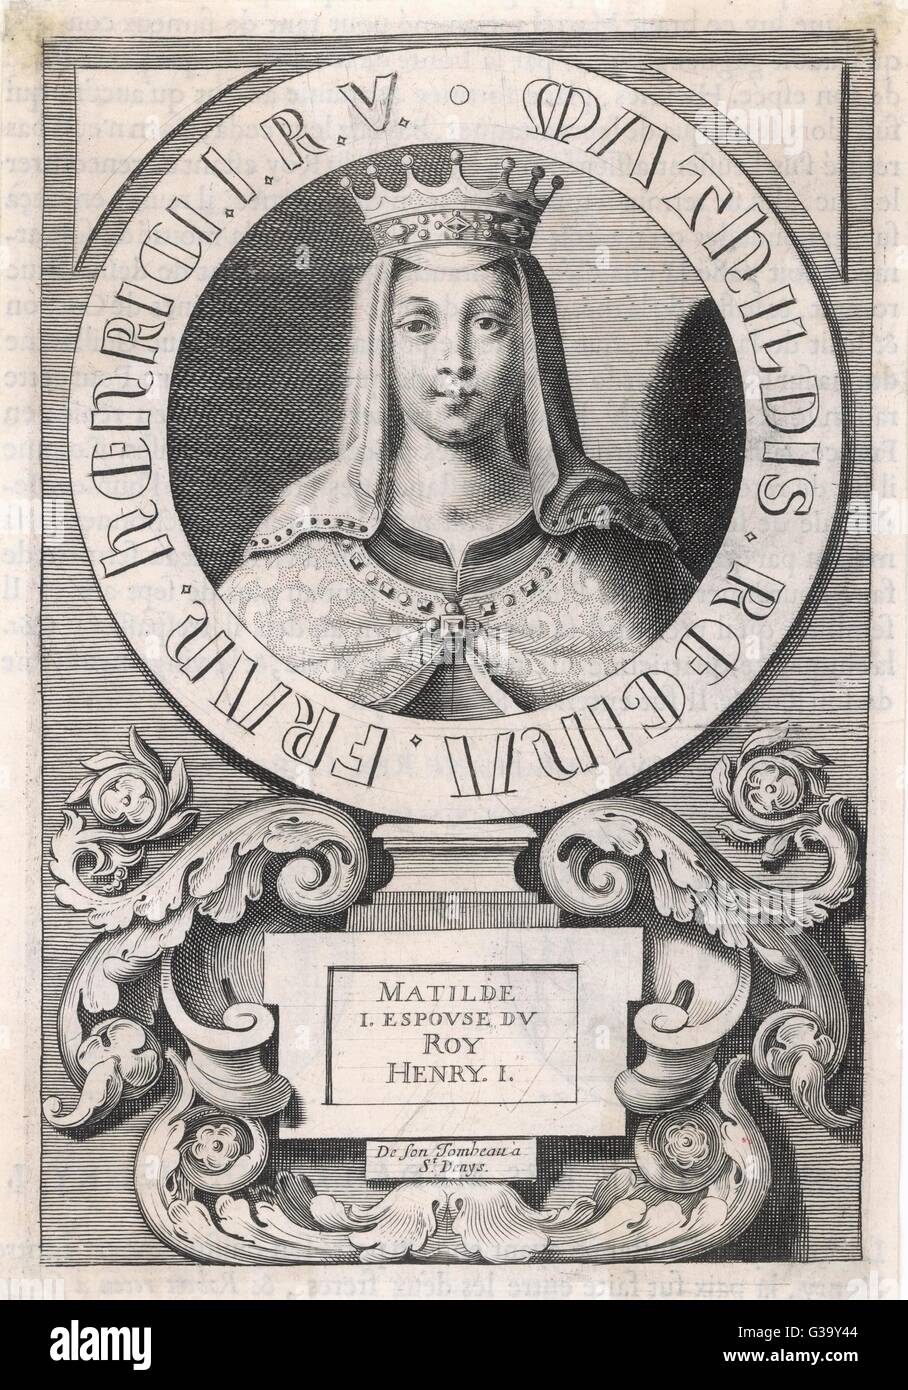 MATILDA (MAUD) von Schottland Tochter von Malcolm III von Schottland; 1. Frau (1100 m) von Heinrich i. von England. Sie änderte ihr name von Edith Matilda nach Ehe mit König Heinrich ich die Norman zu beschwichtigen Barone.     Datum: 1080-1118 Stockfoto